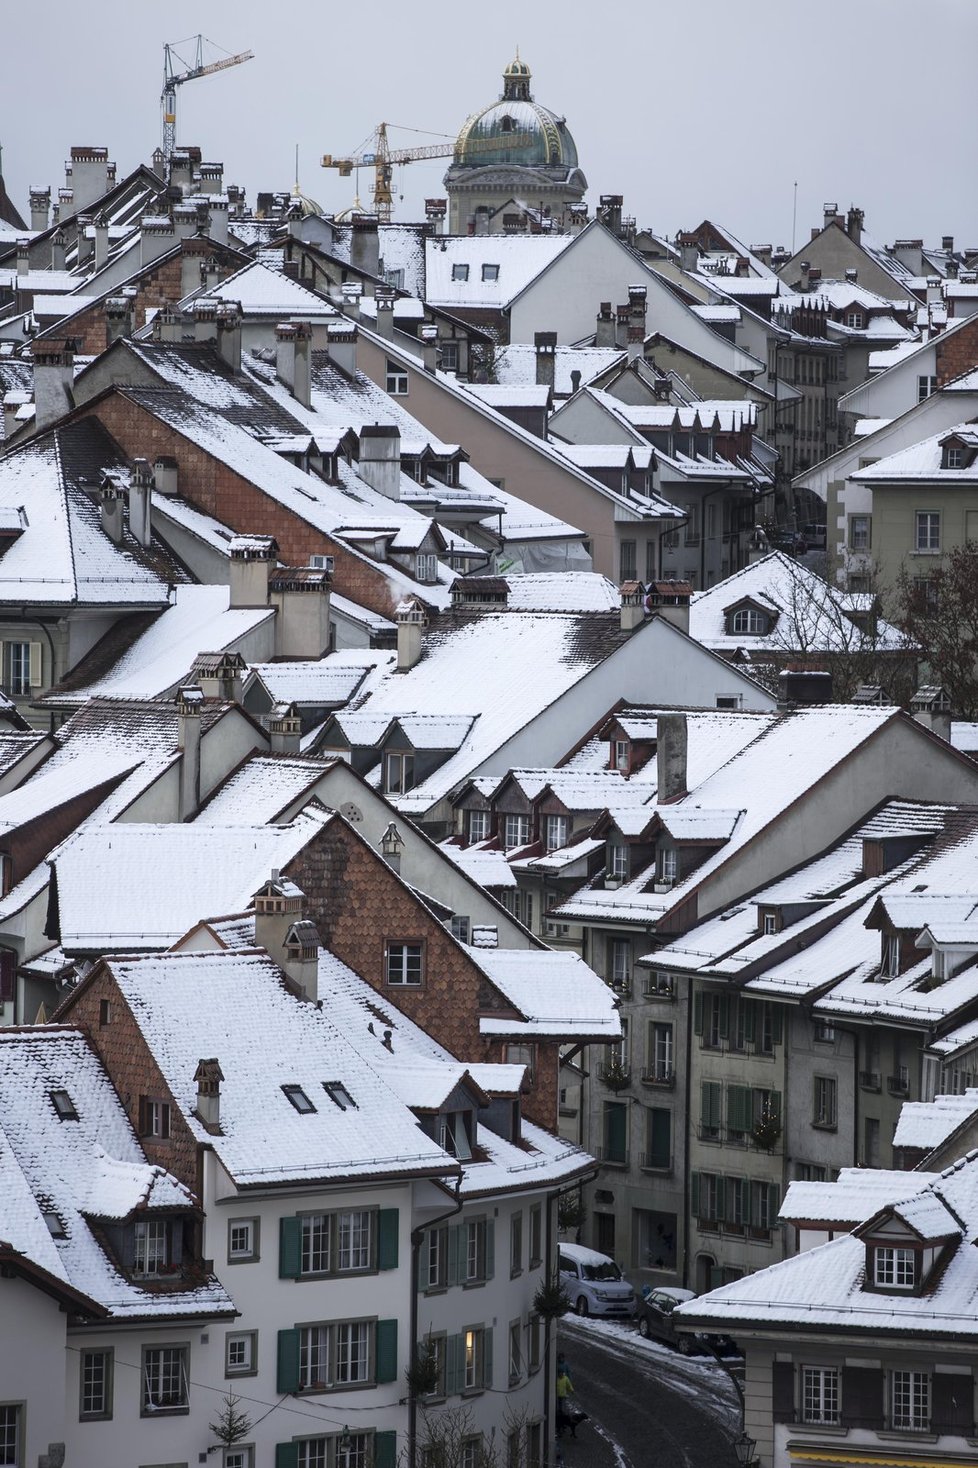 Příští týden přinese do Česka sníh. Sněžit bude hlavně na horách, přechodně se ale vloček dočkají i lidé v nížinách. (ilustrační foto)